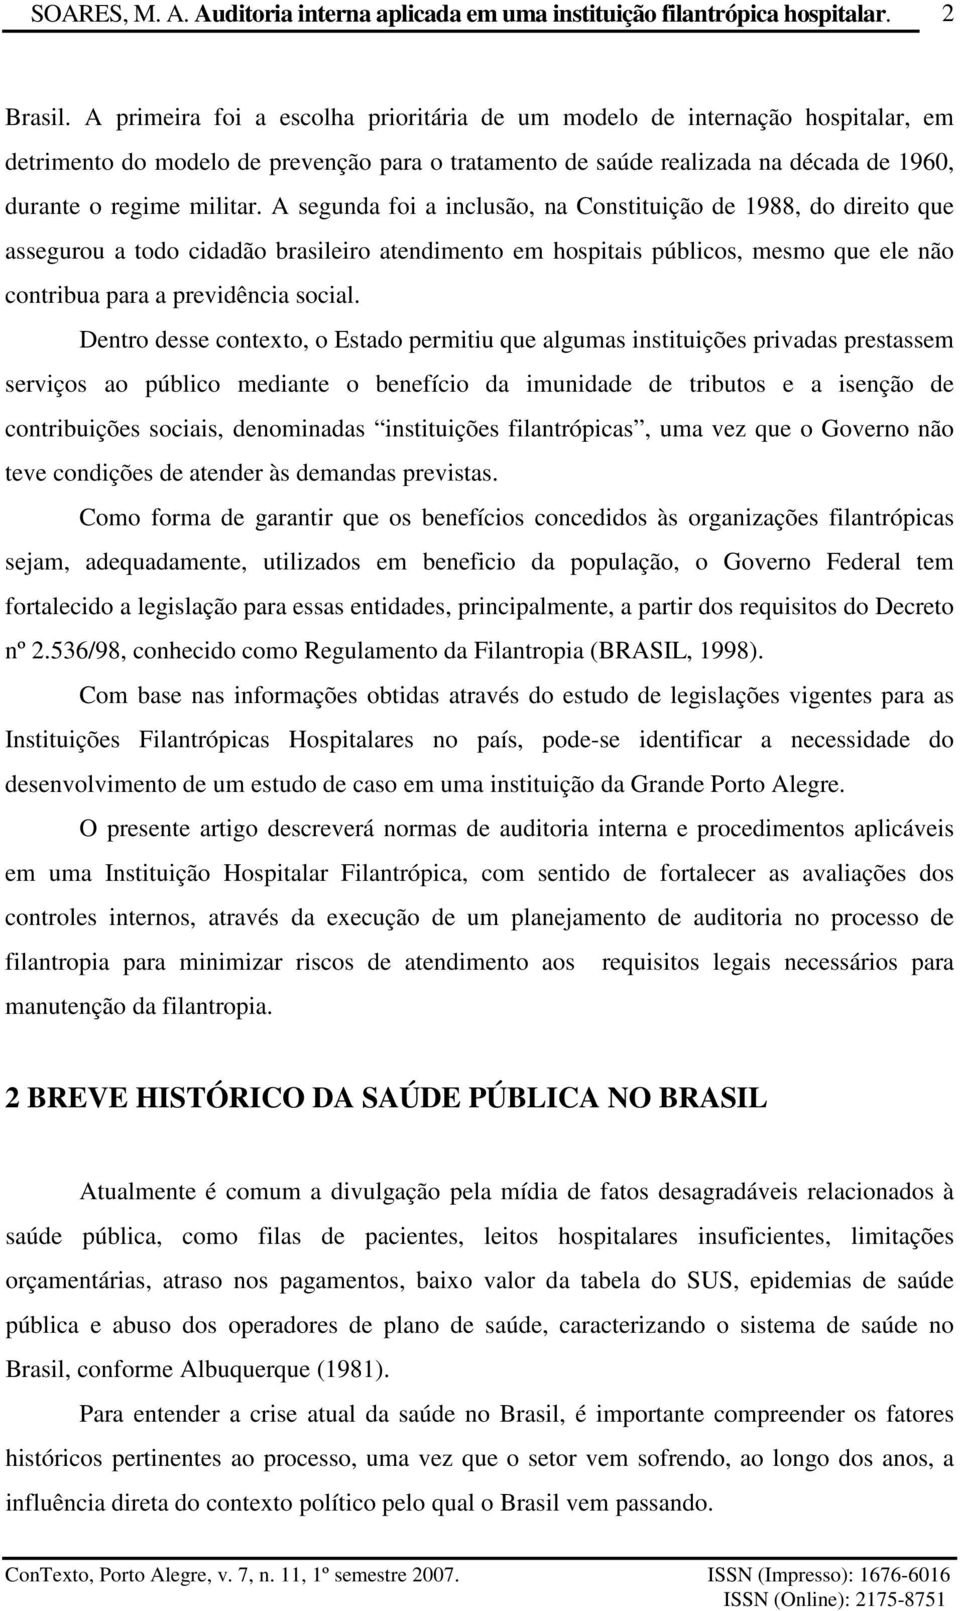 A segunda foi a inclusão, na Constituição de 1988, do direito que assegurou a todo cidadão brasileiro atendimento em hospitais públicos, mesmo que ele não contribua para a previdência social.